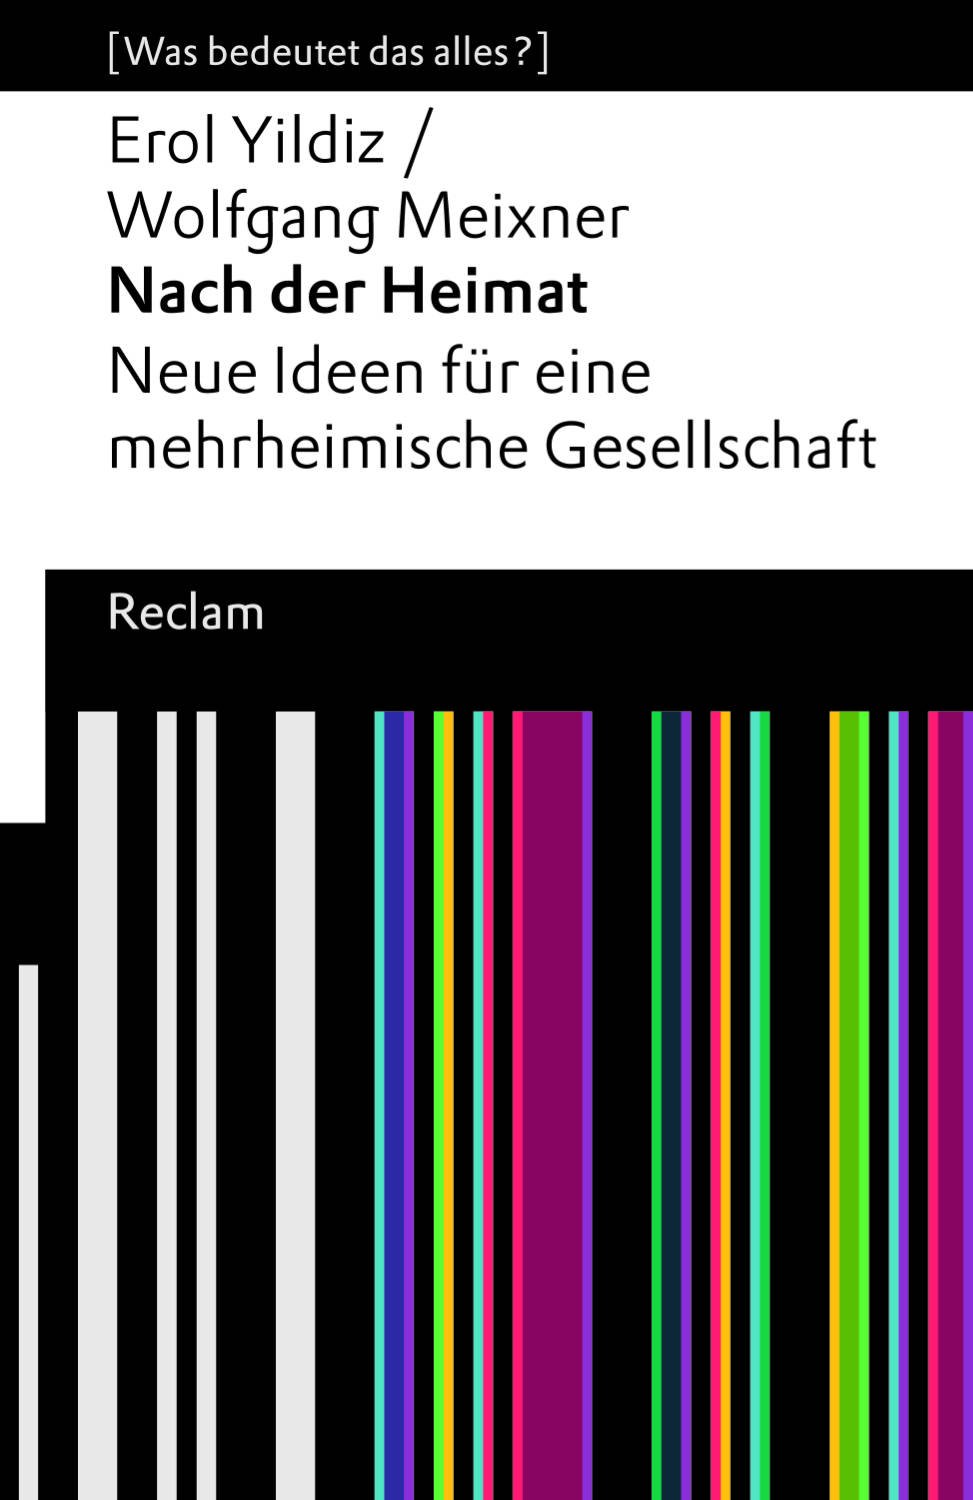 Cover des Buchs "Nach der Heimat"